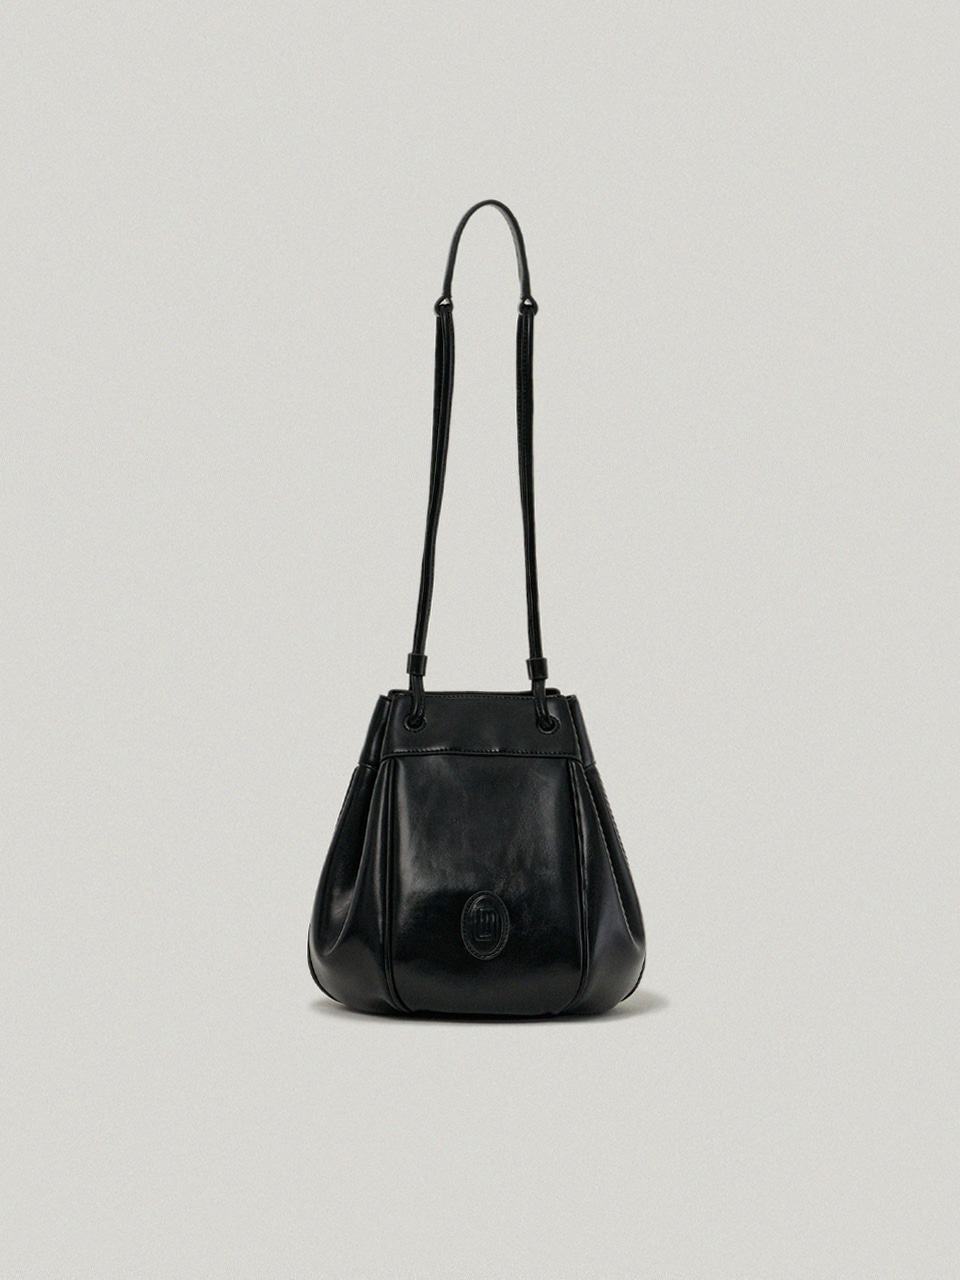 Aude Copain Bag / Soft Black